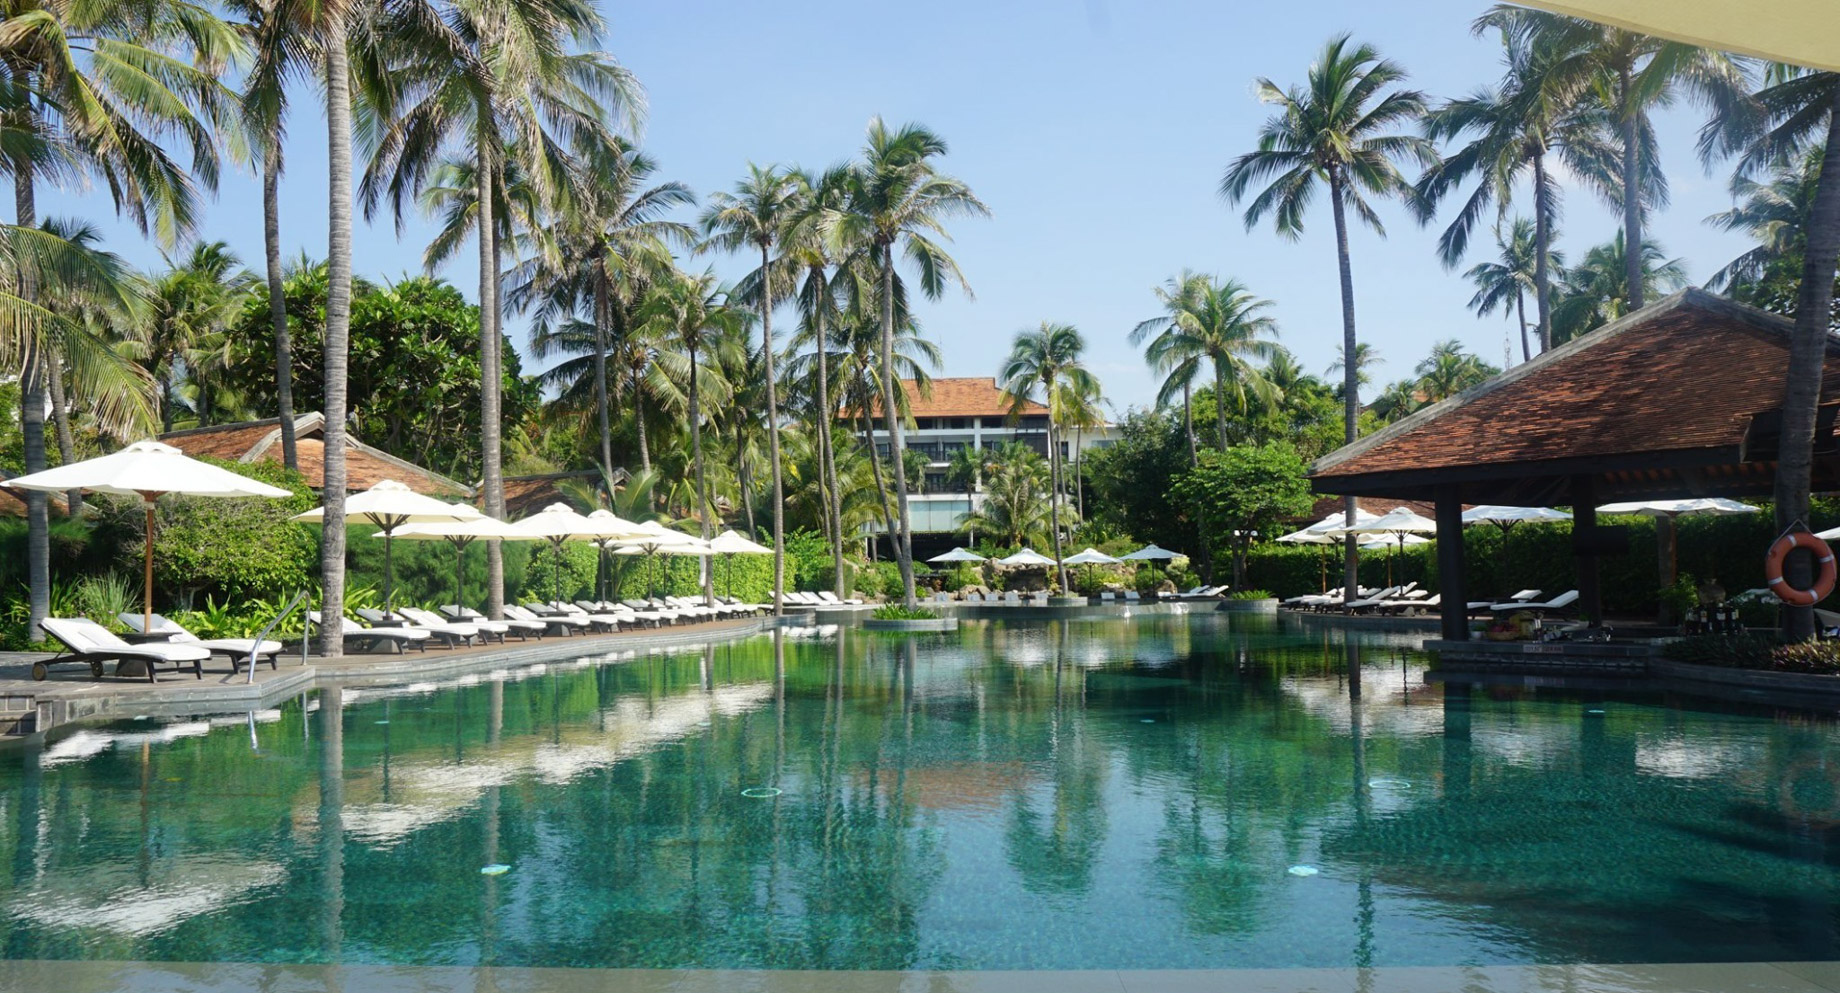 Anantara Mui Ne Resort – Phan Thiet, Vietnam – Resort Pool View